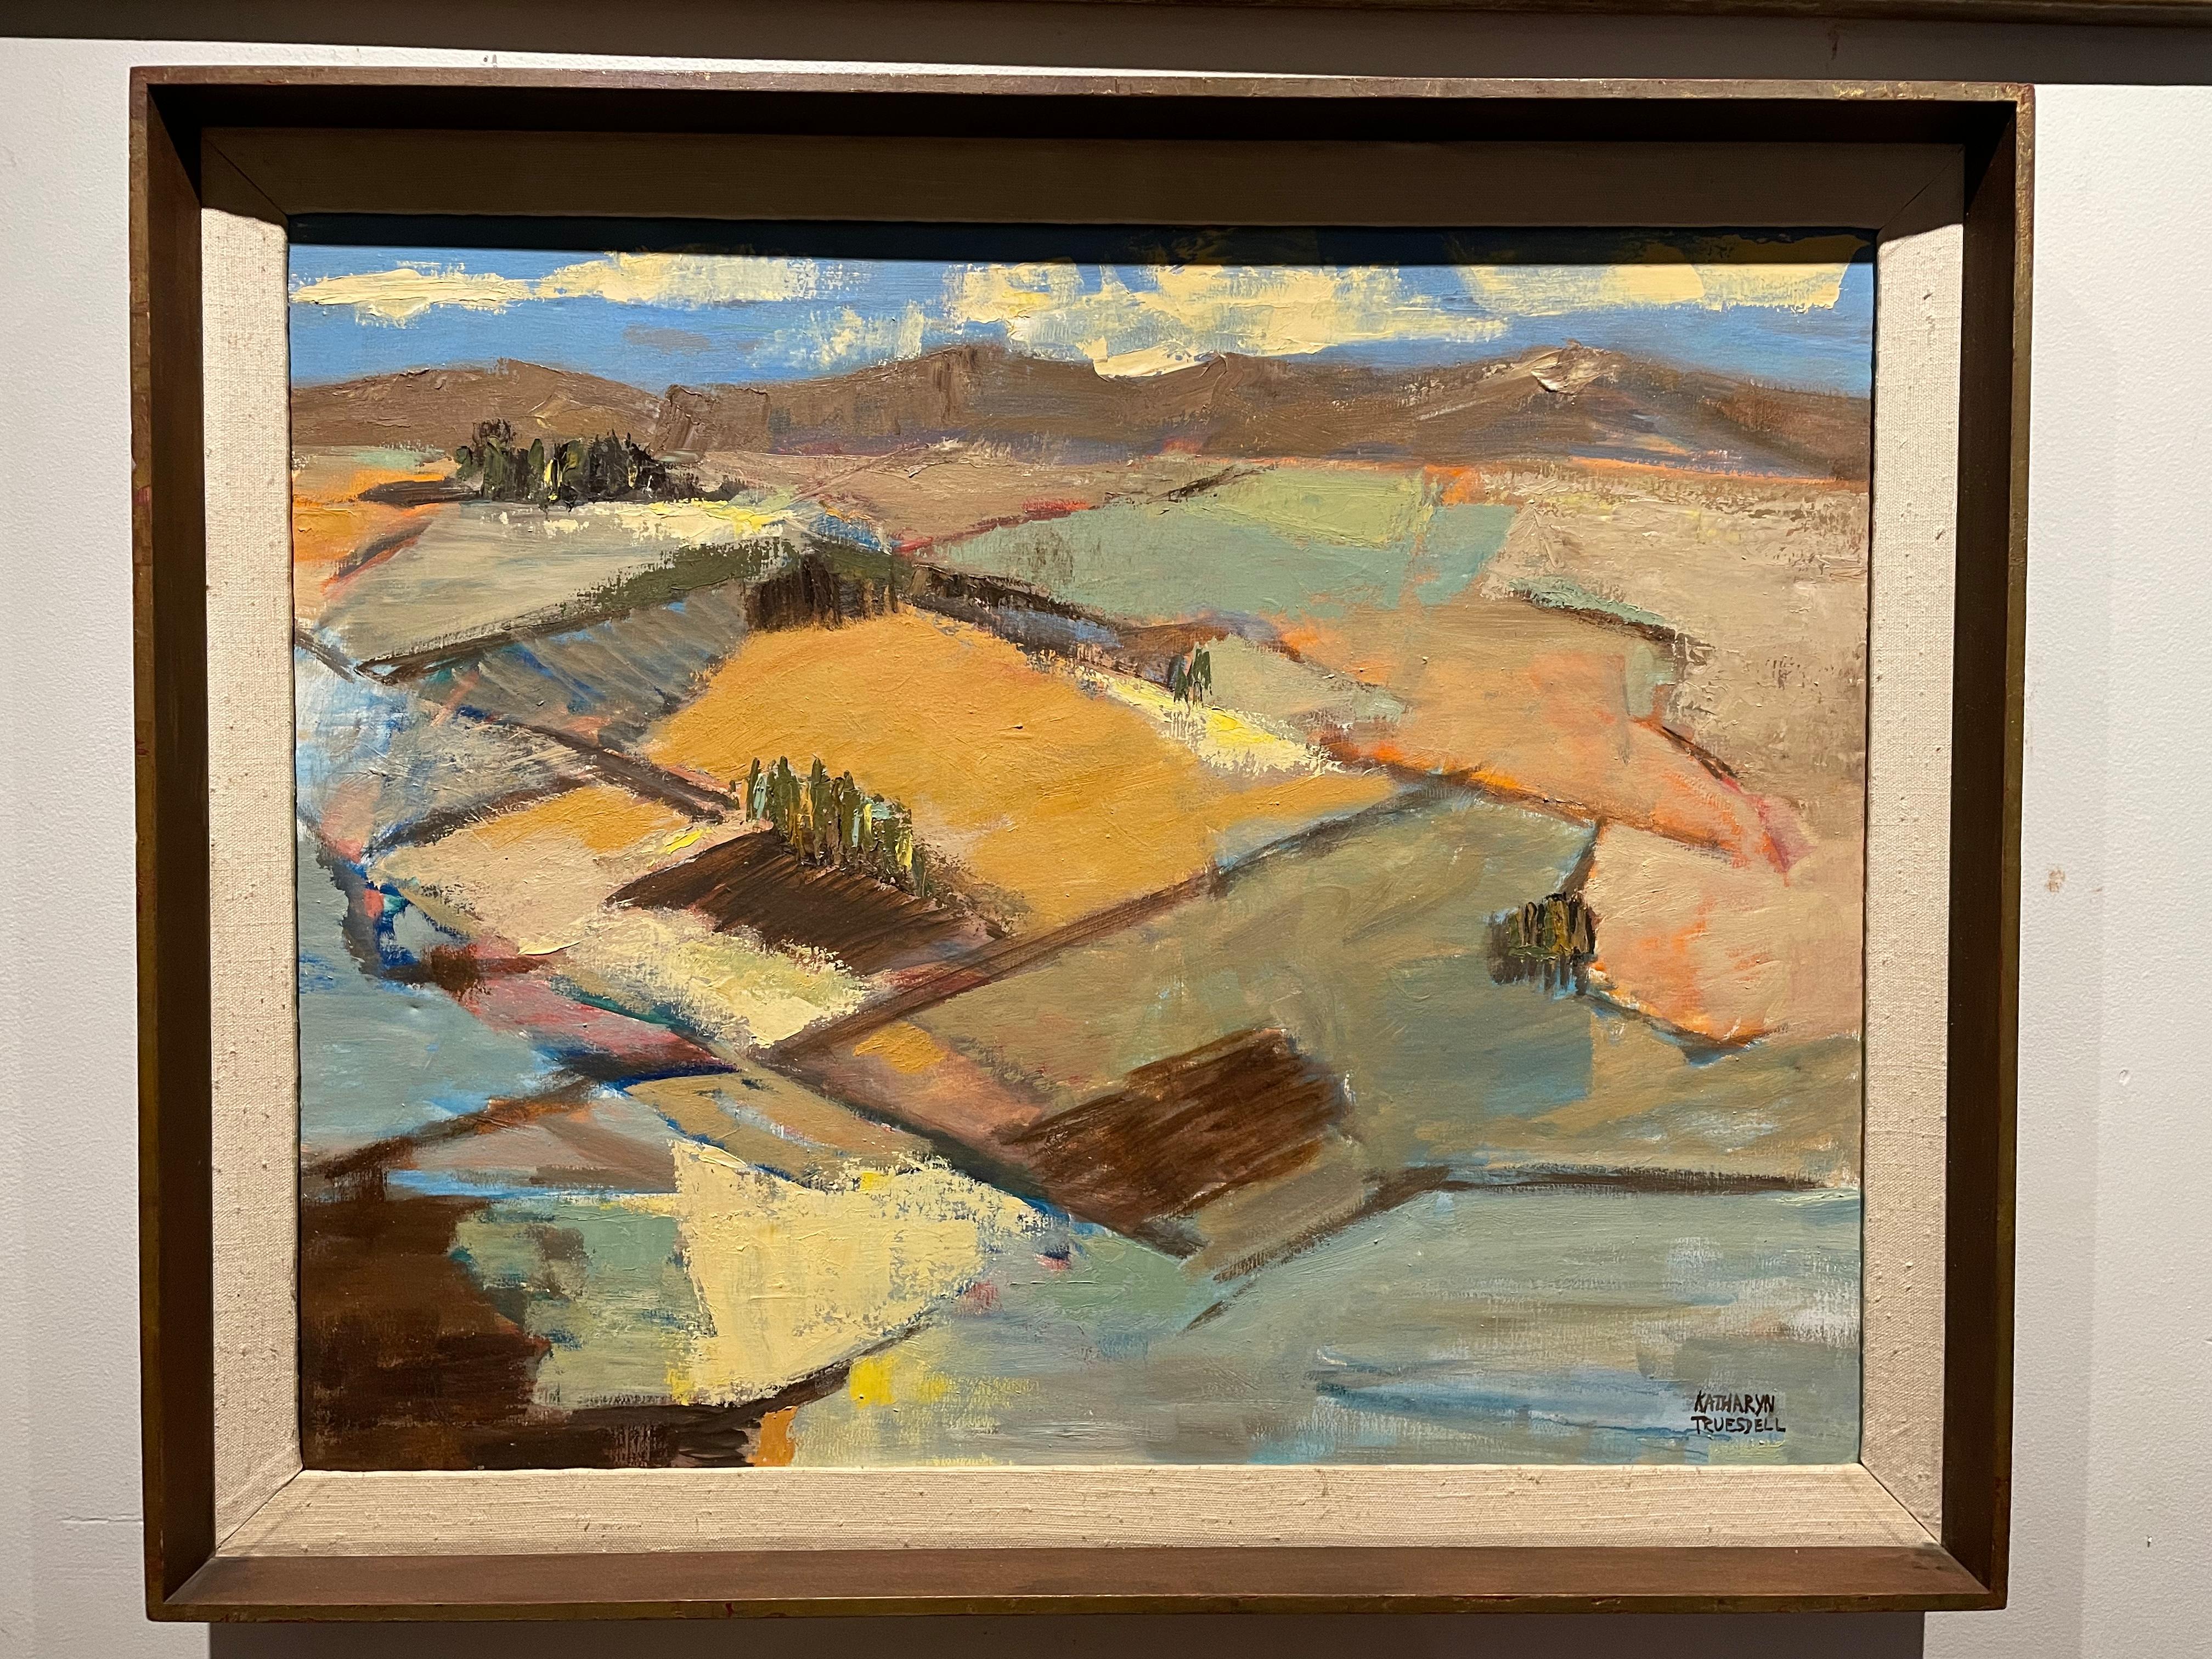 Peinture de paysage abstrait de Californie du Sud - Katharyn Truesdell, années 70